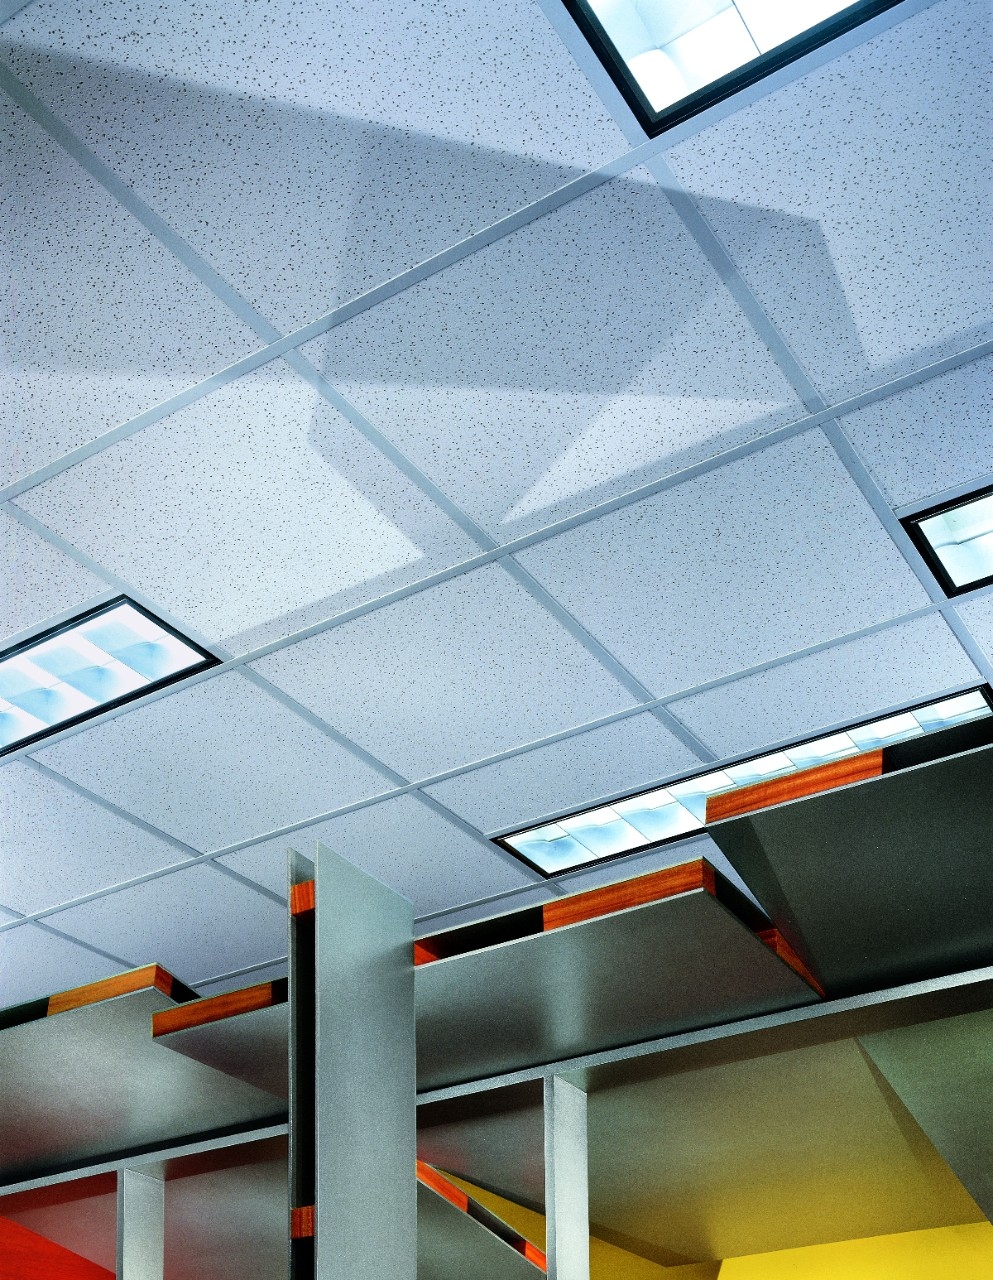 Usg Radartm Acoustical Ceiling Tile Panels Usg Radartm Acoustical Ceiling Tile Panels cgc radar basic acoustical ceiling panels 993 X 1280